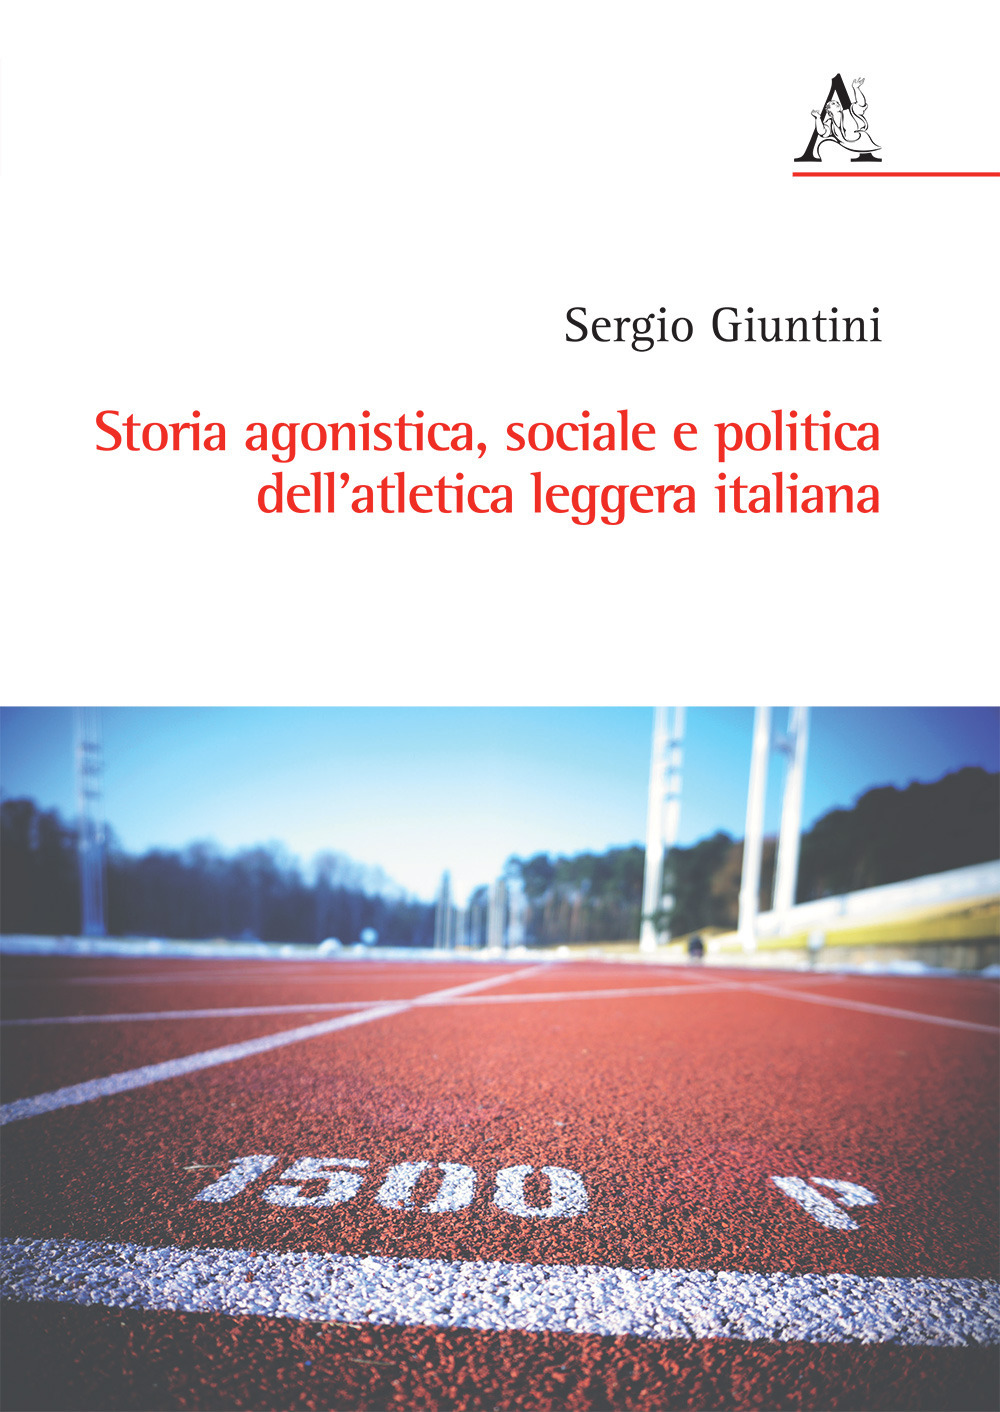 Libri Sergio Giuntini - Storia Agonistica, Sociale E Politica Dell'Atletica Leggera Italiana NUOVO SIGILLATO, EDIZIONE DEL 07/07/2017 SUBITO DISPONIBILE